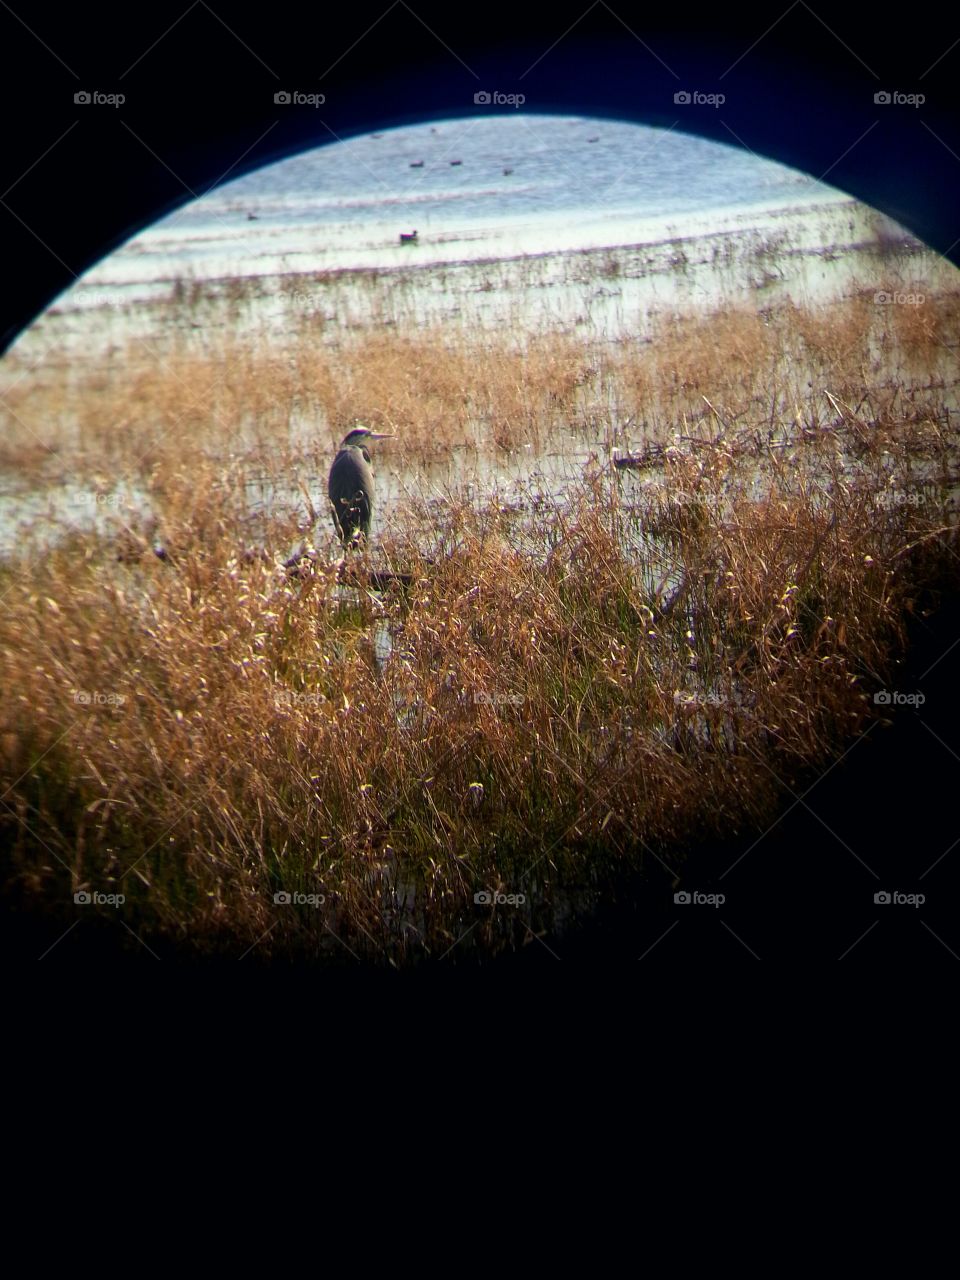 Heron through binocular lense